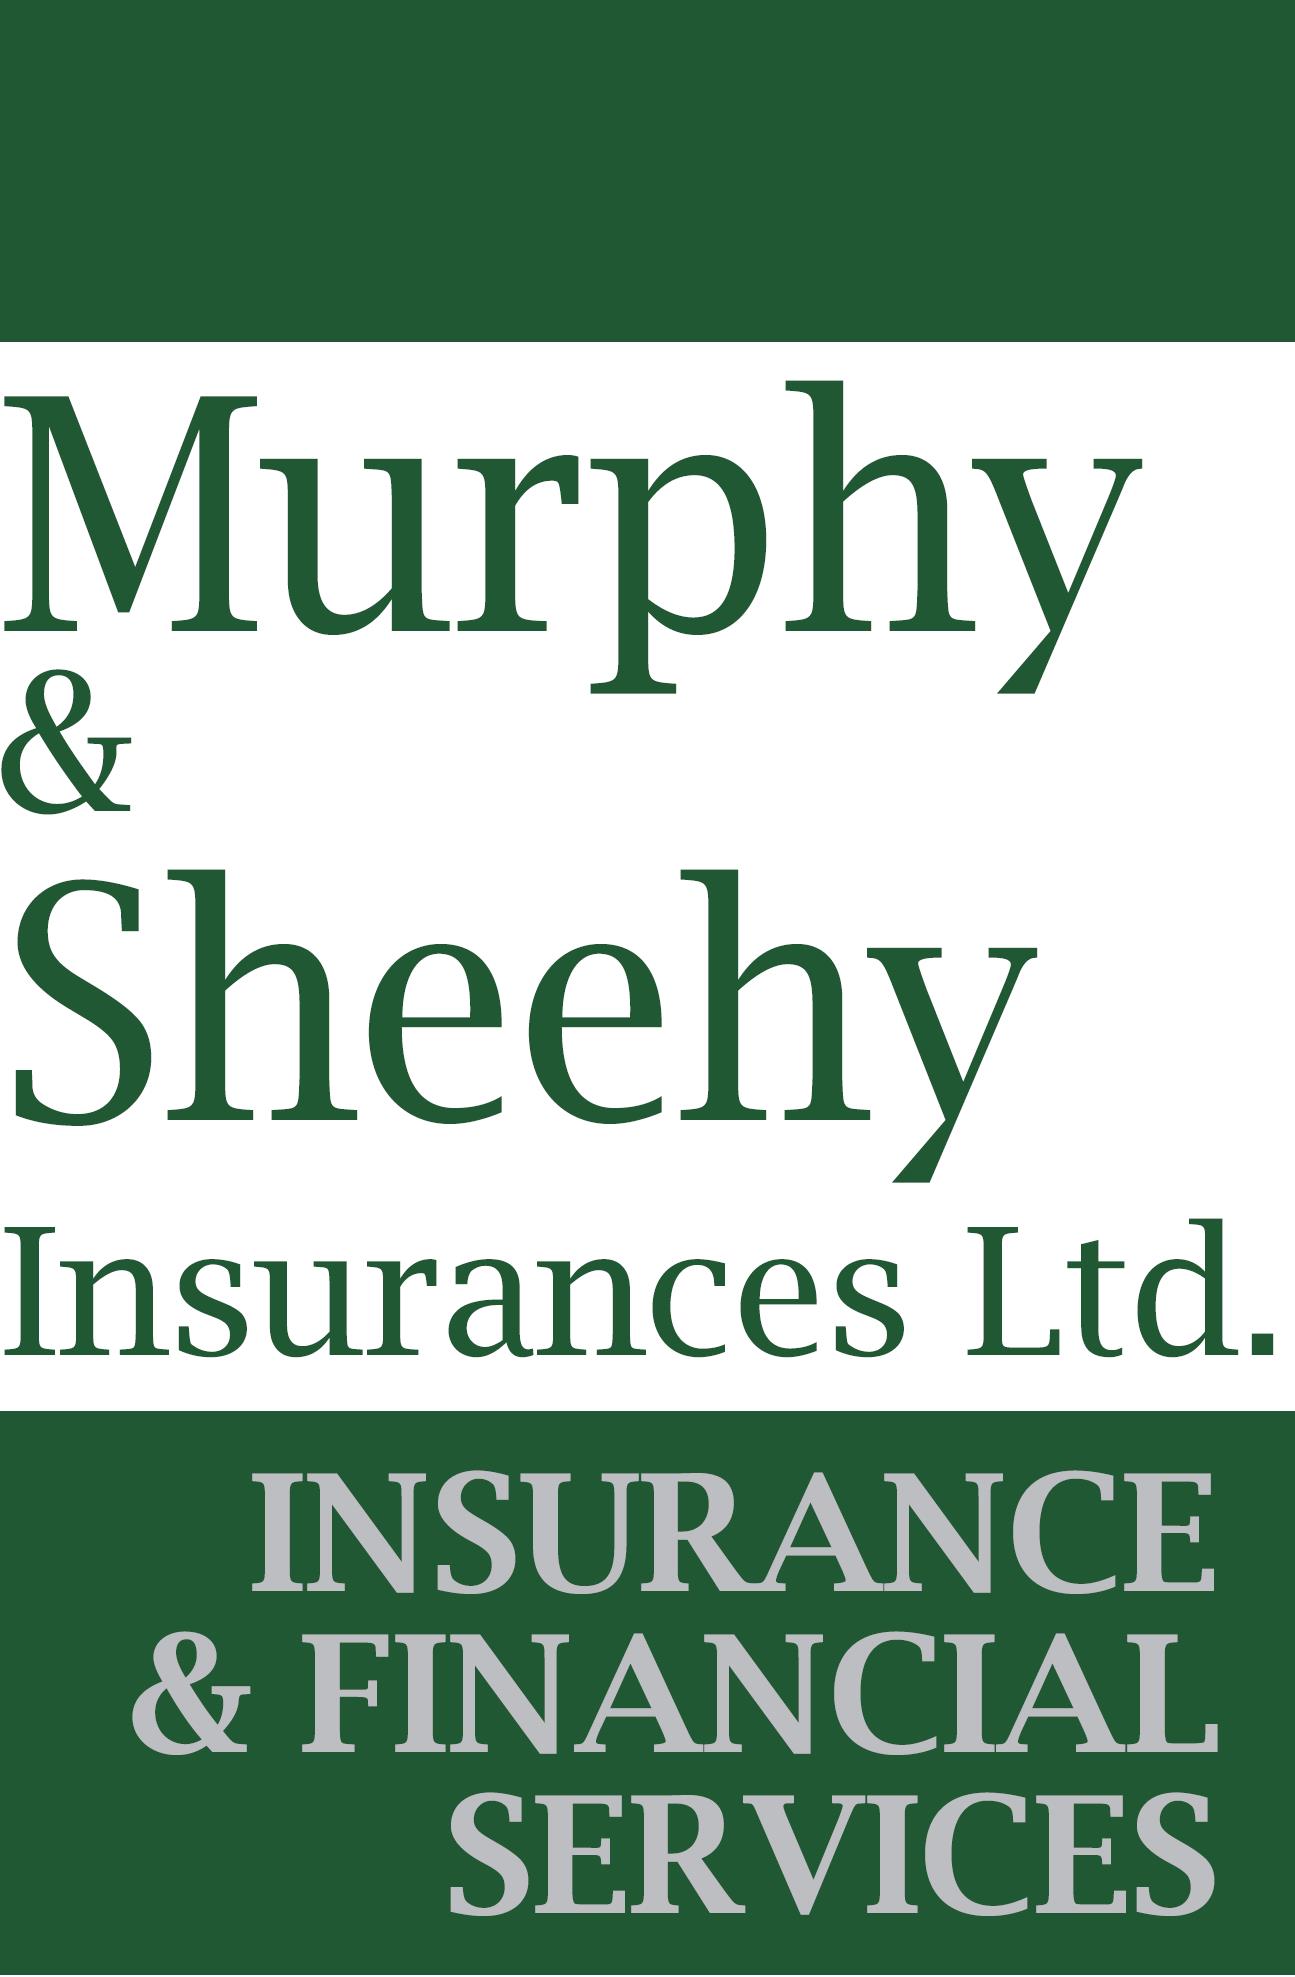 Murphy & Sheehy Insurances Ltd.